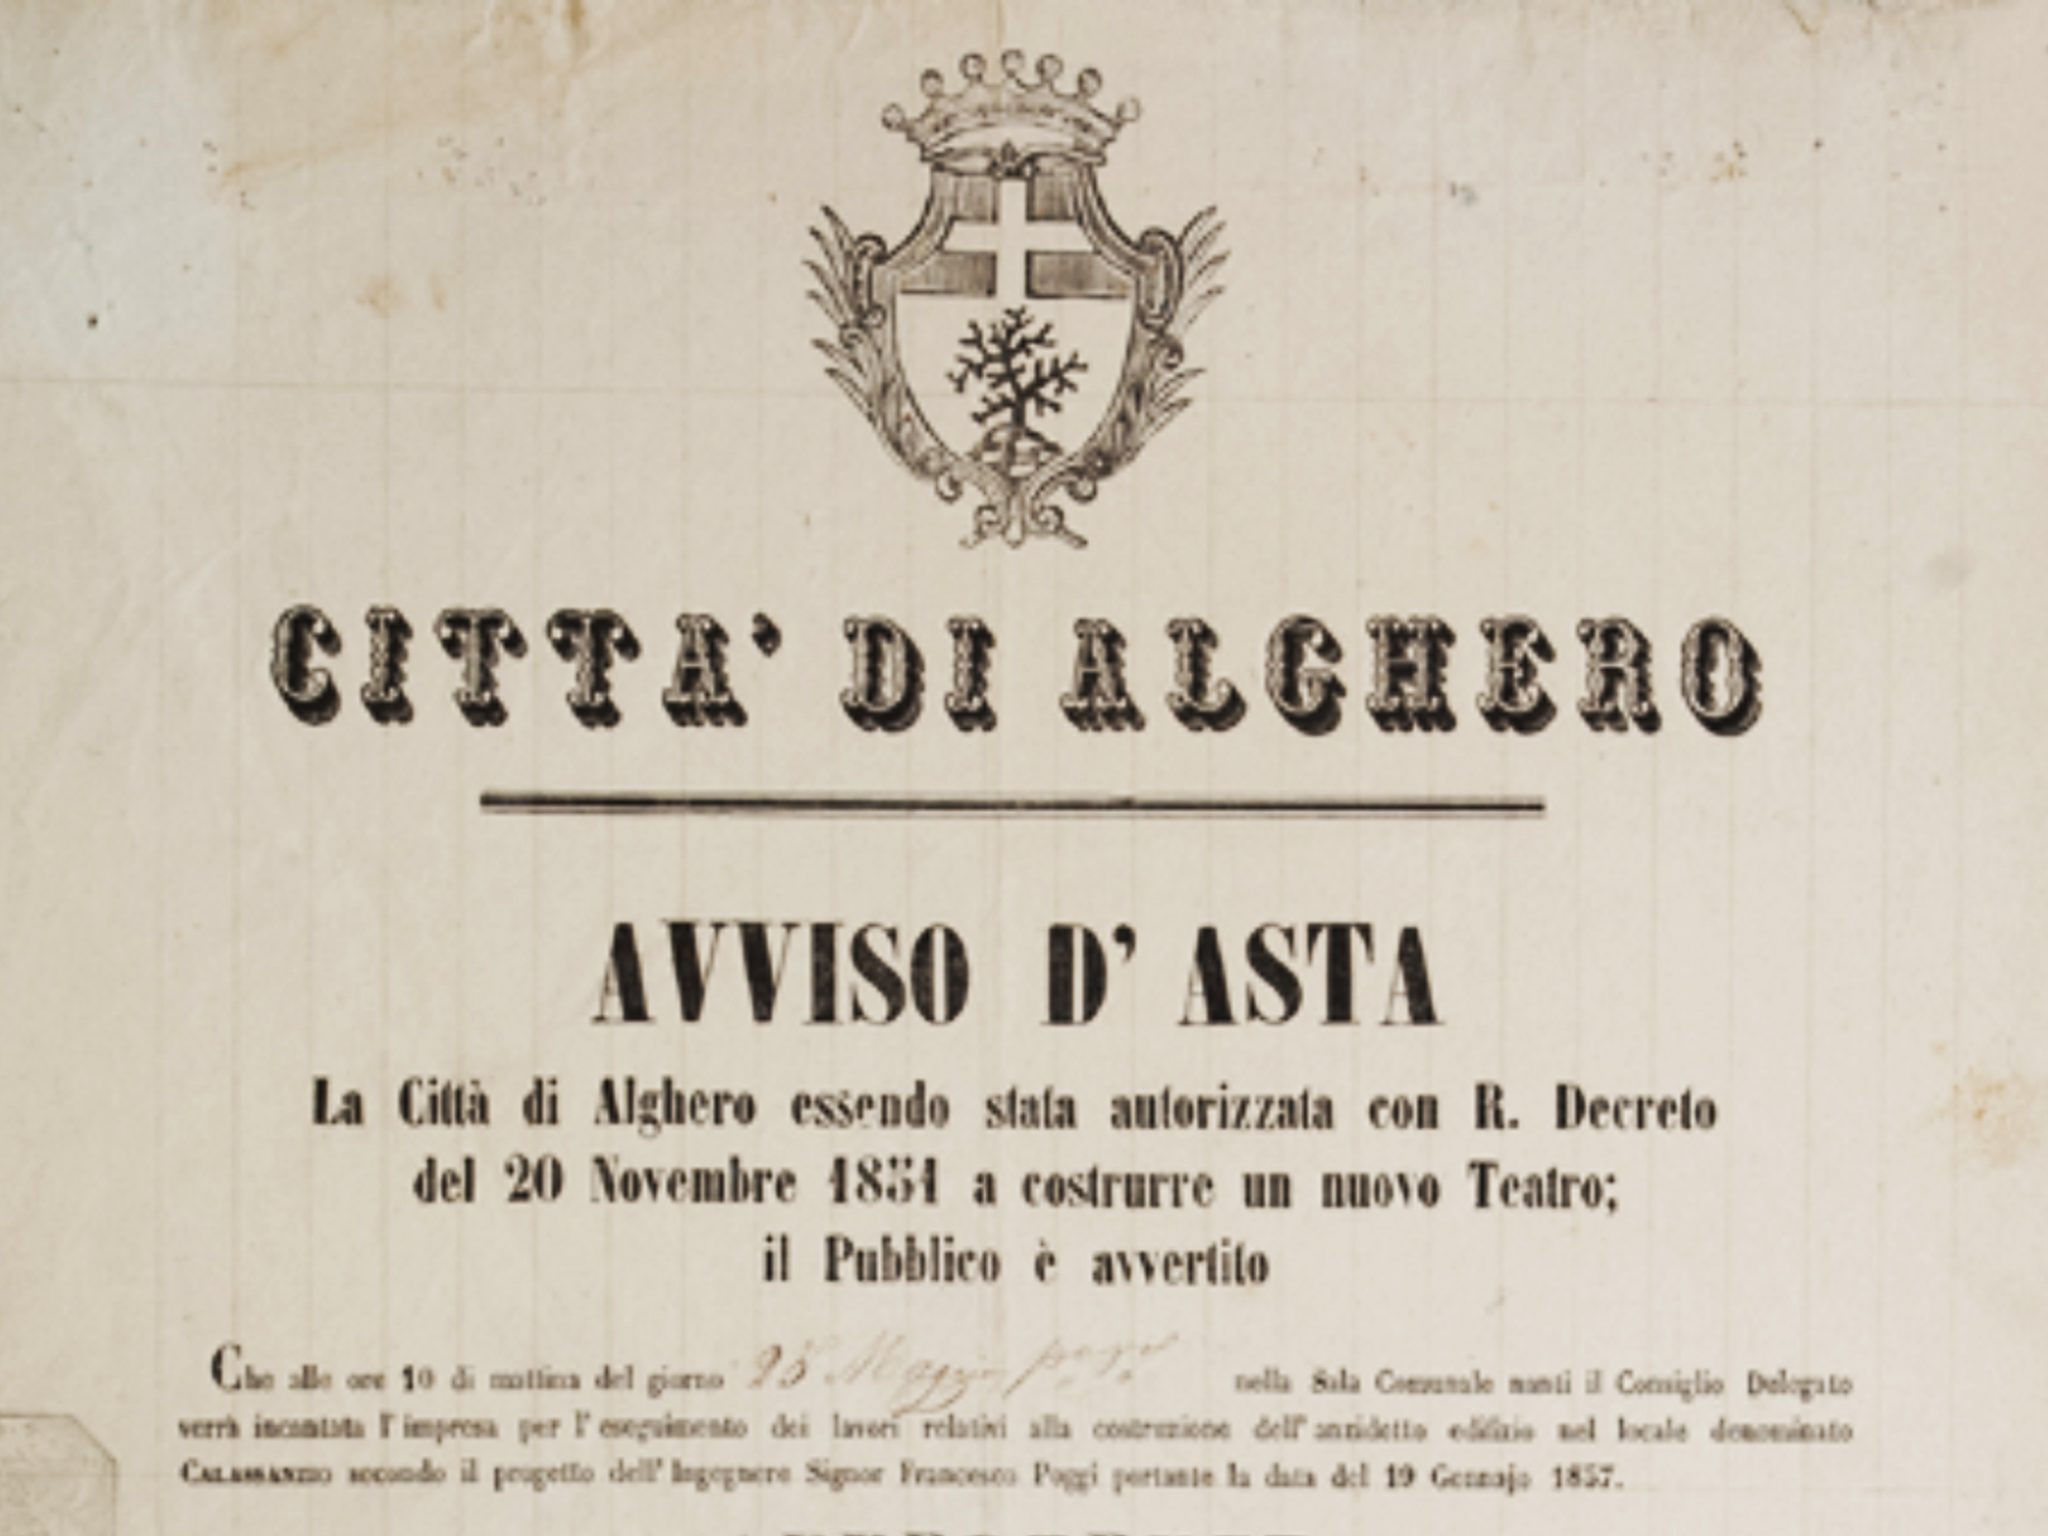 Avviso d’asta per la costruzione del nuovo teatro, 1854. Archivio Storico Comunale Alghero.